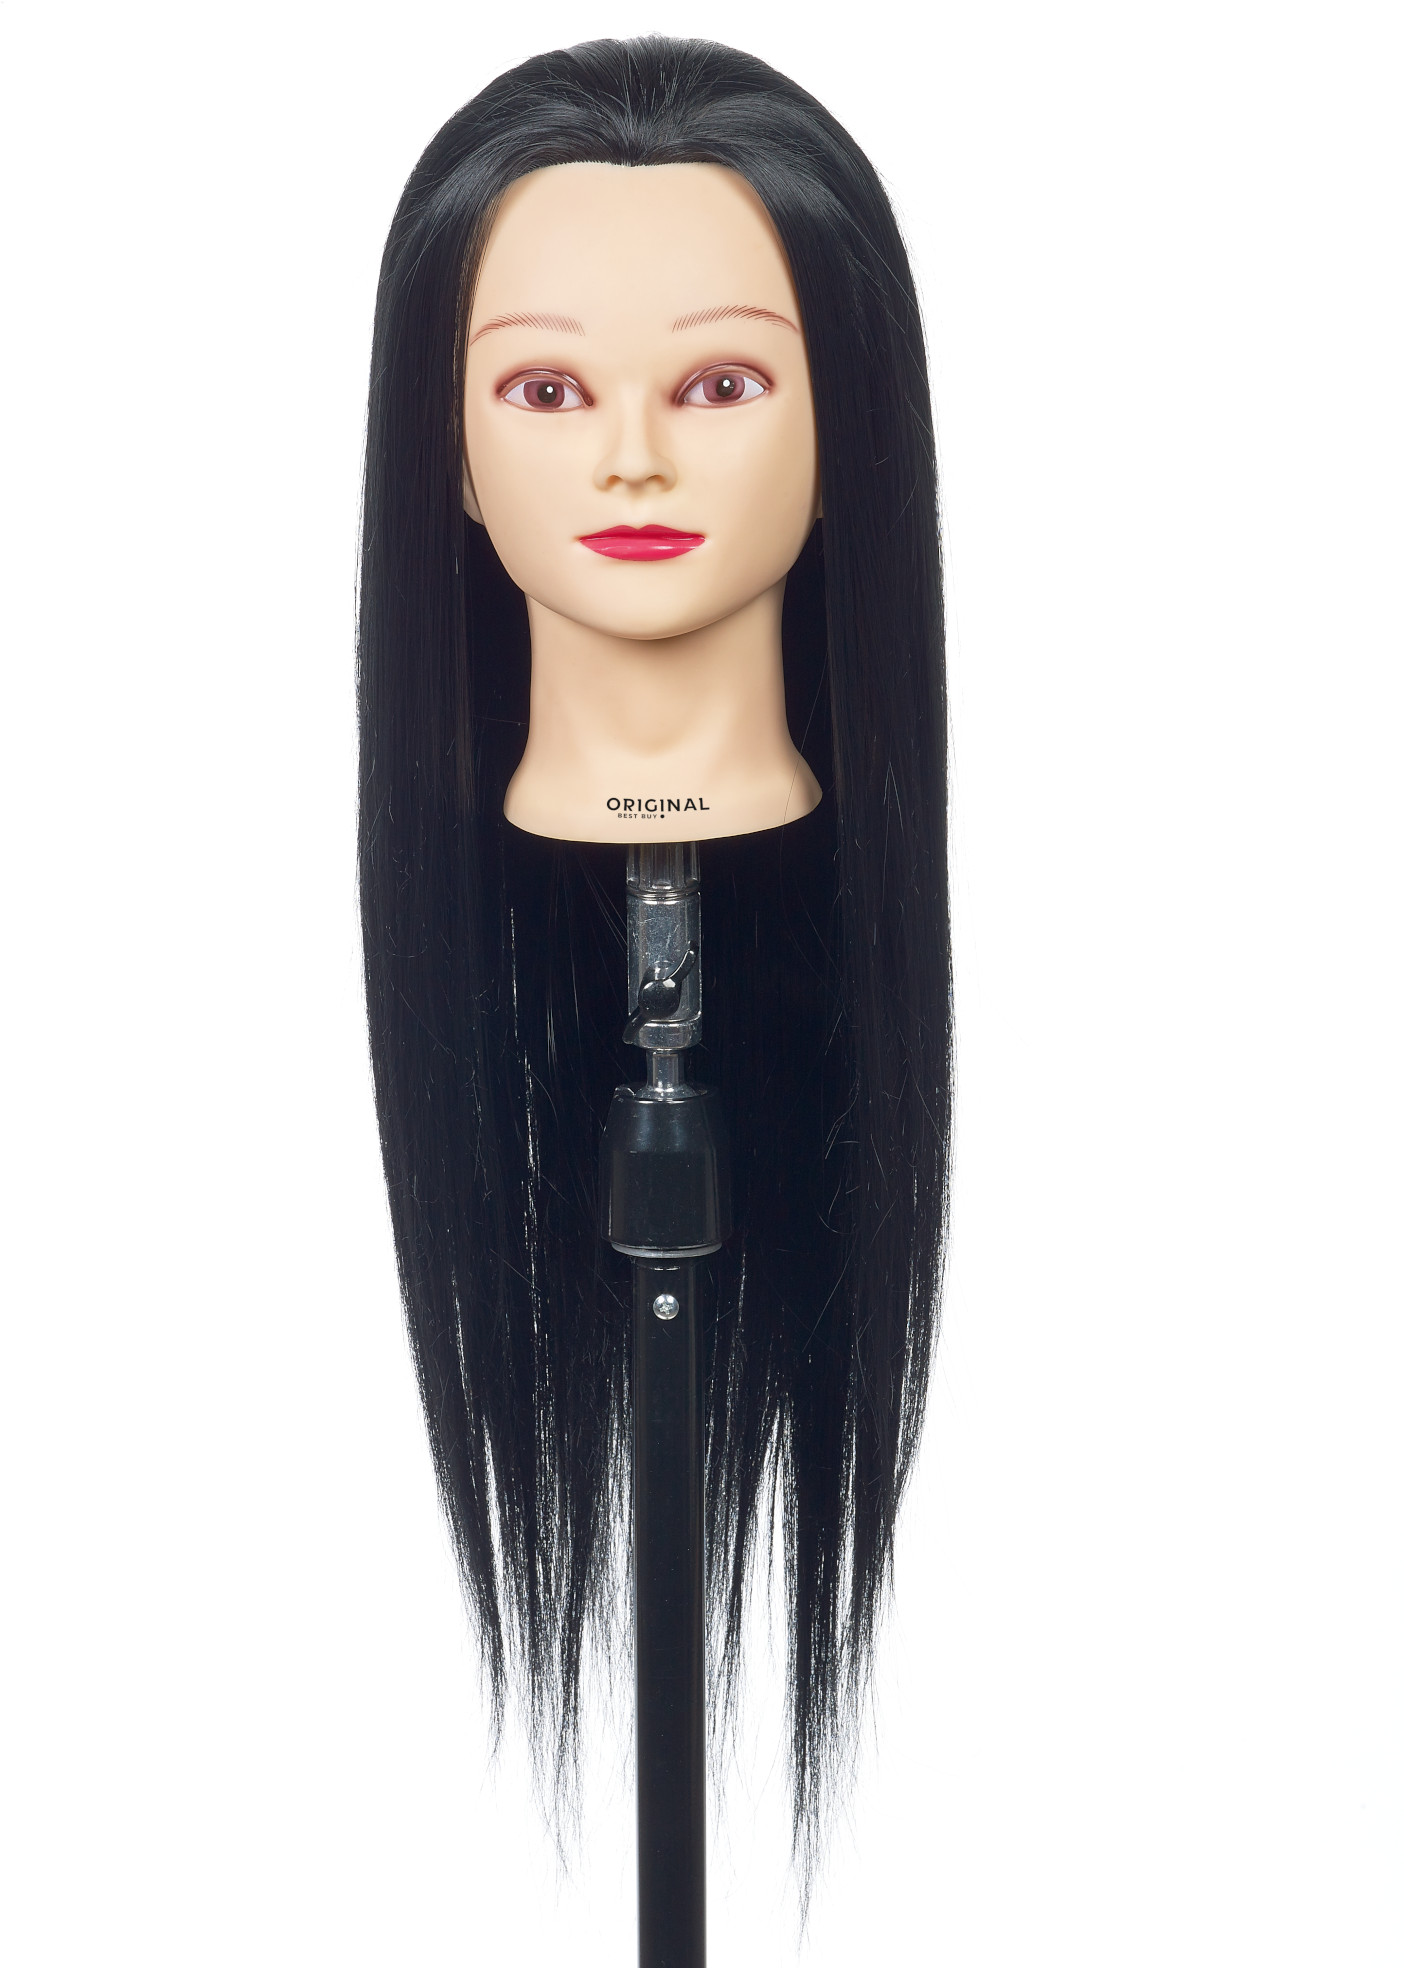 Cvičná hlava dámská s umělými vlasy JESSY, Original Best Buy - černé 50 - 60 cm (0030096) + DÁREK ZDARMA